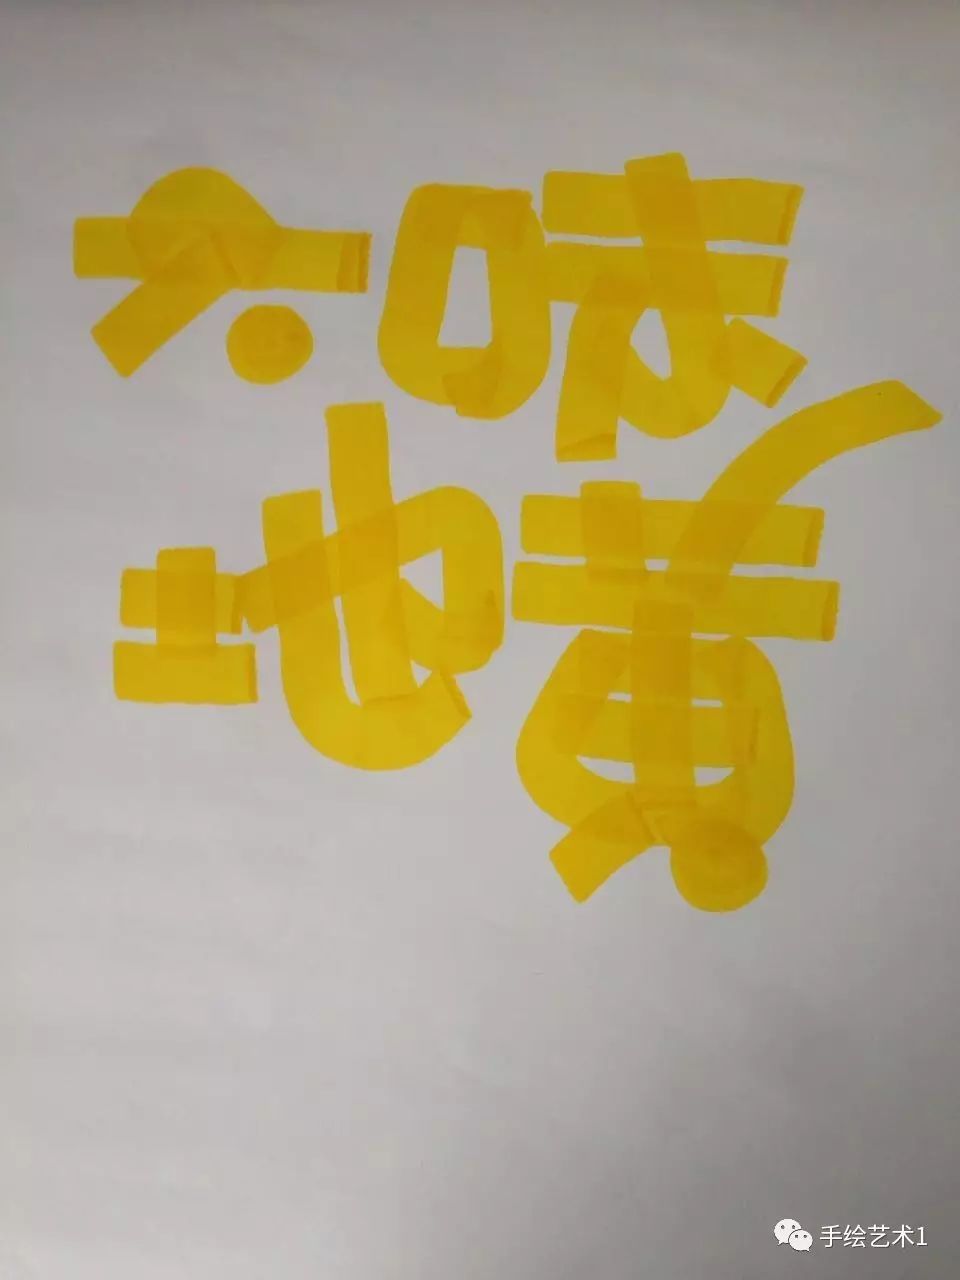 【手绘pop技能分解】教您如何简单的绘制六味地黄胶囊海报